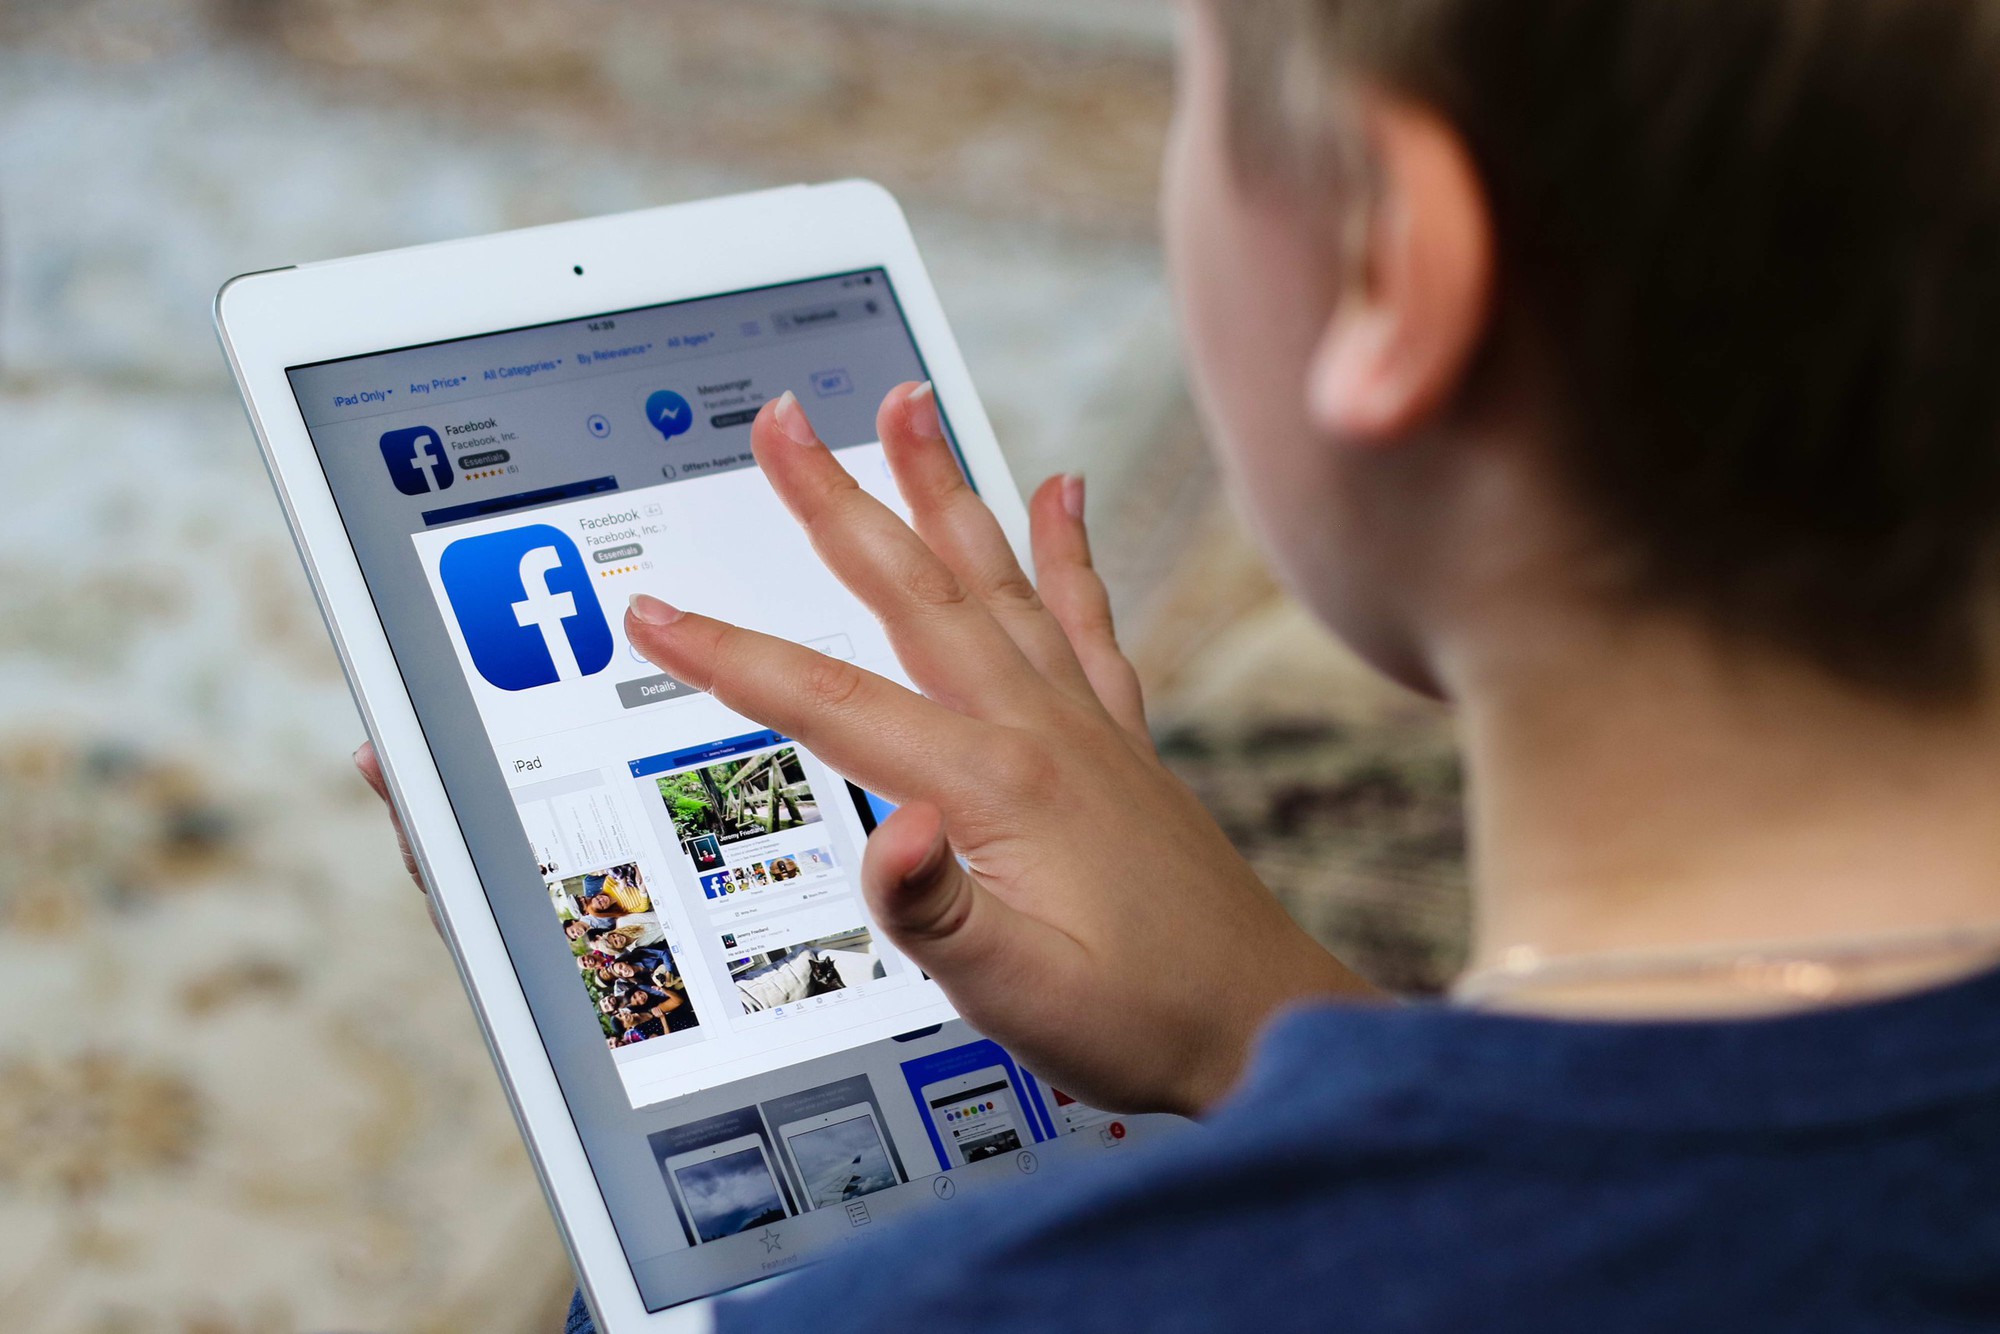 “Tiết lộ sốc” về trẻ em bị quấy rối mỗi ngày trên Facebook